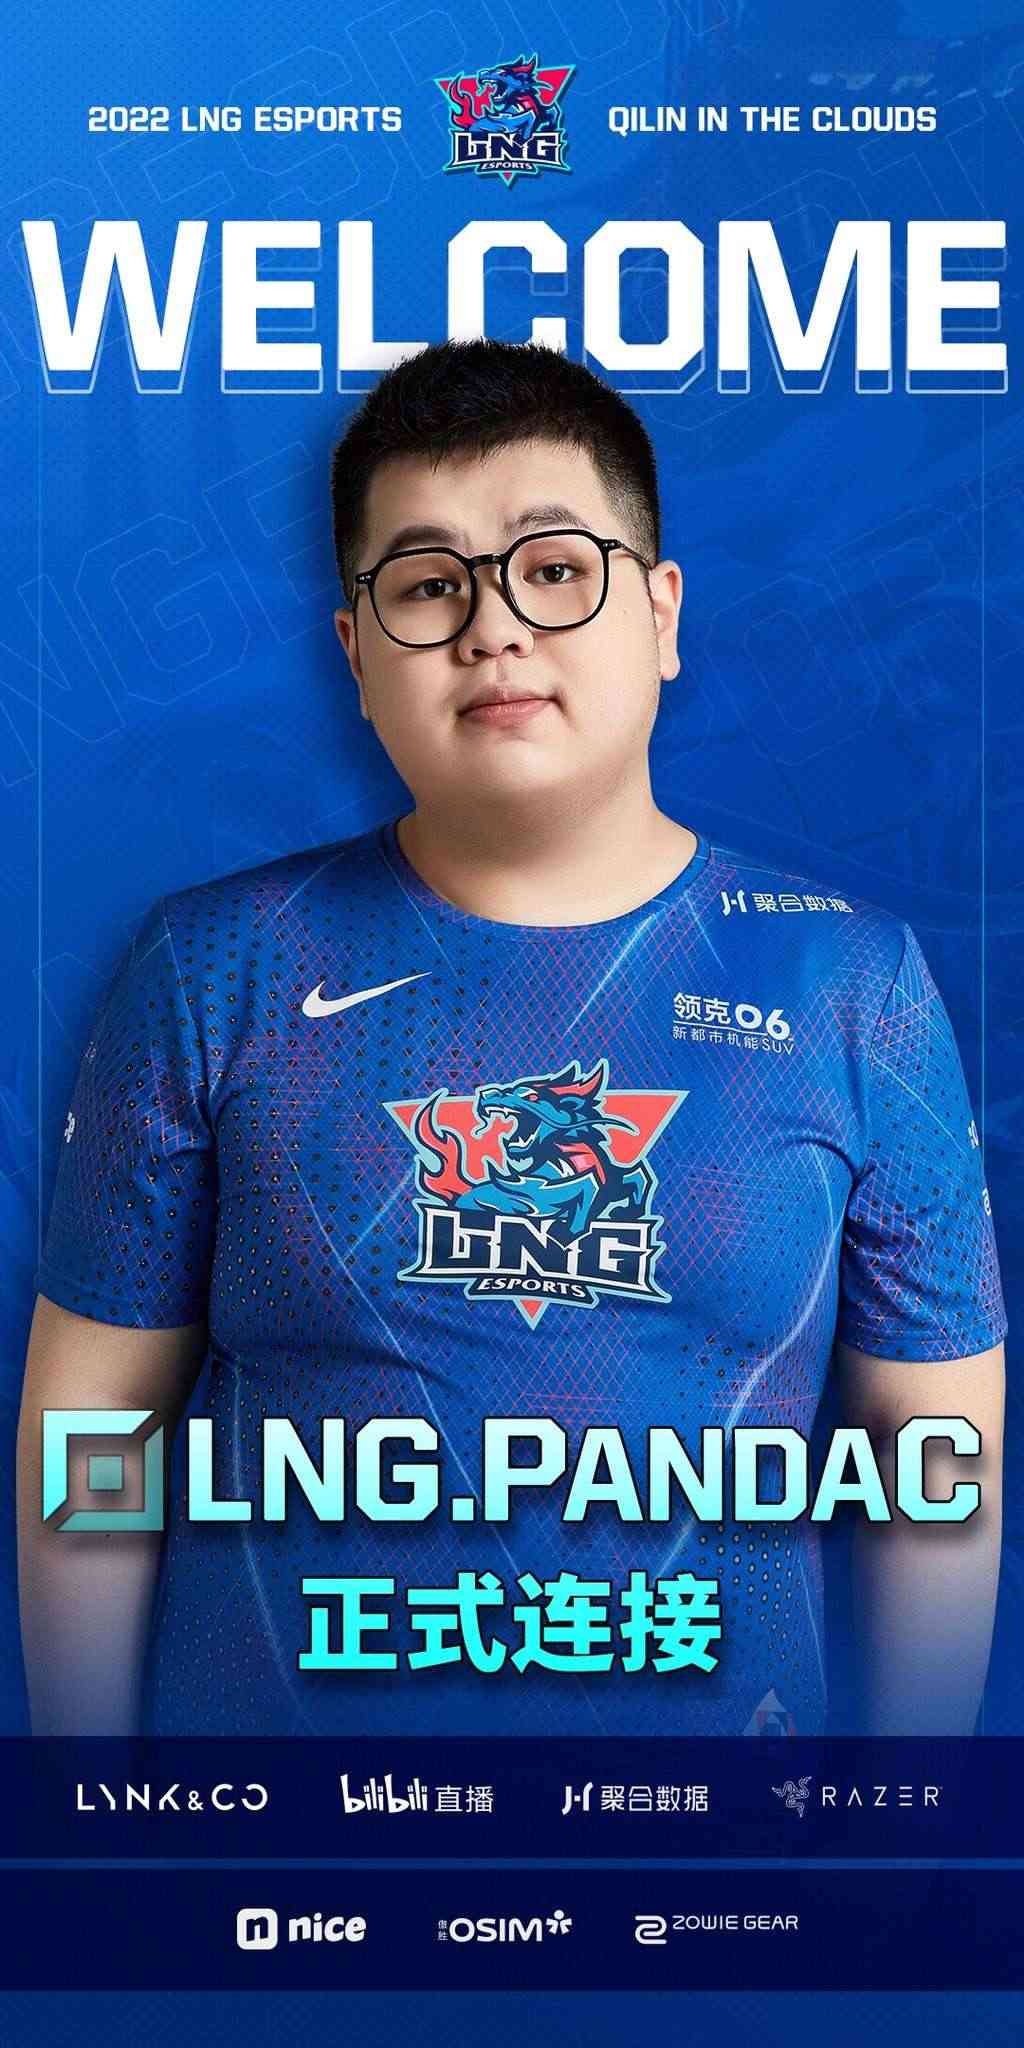 PandaC vừa được chuyển lên đội hình chính từ ngày 13/7.